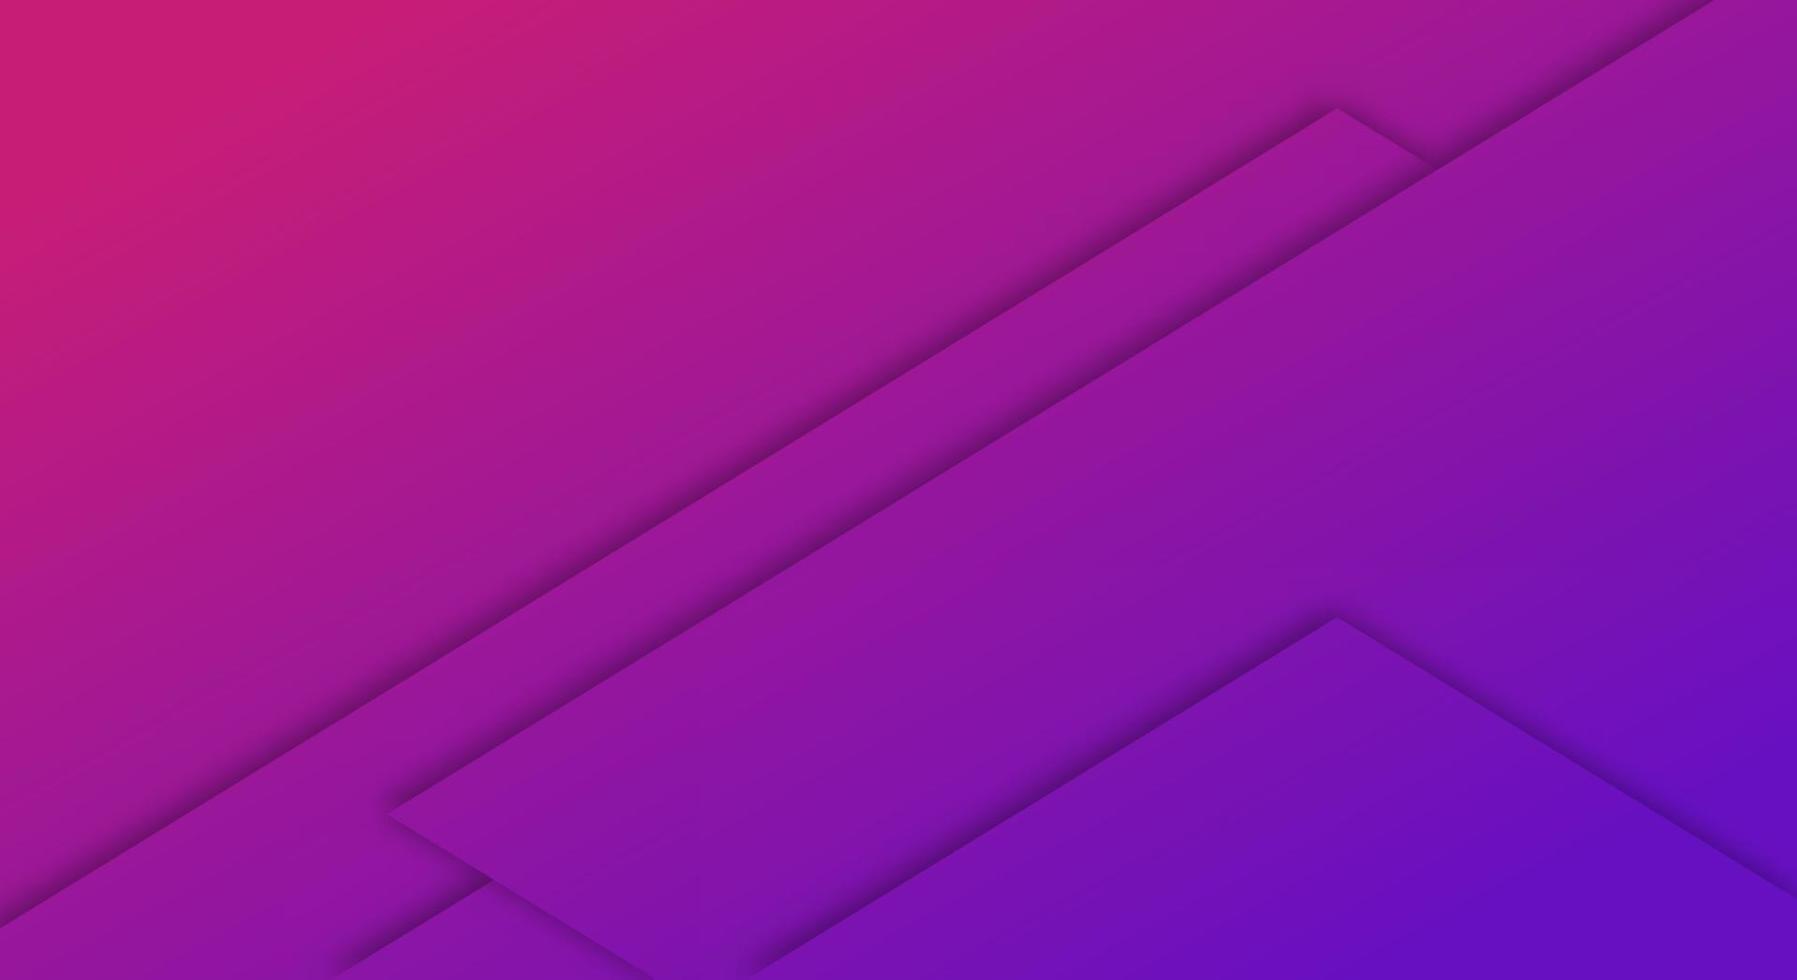 style de coupe de papier géométrique abstrait dégradé violet et rose pour les brochures ou le modèle de pages de destination vecteur